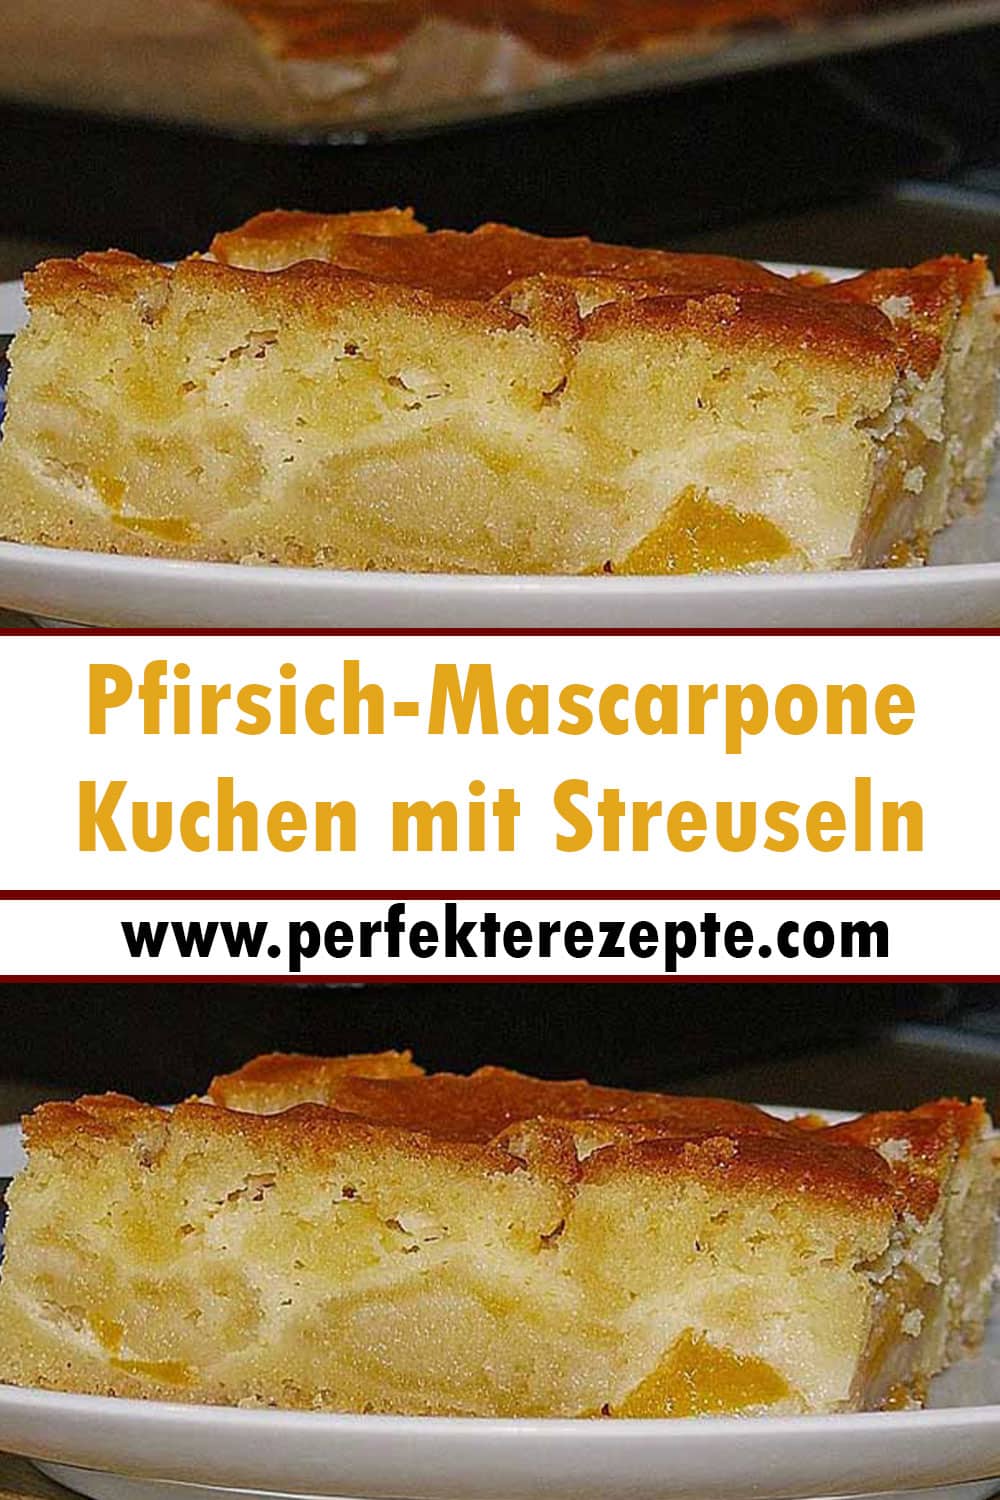 Pfirsich-Mascarpone Kuchen mit Streuseln Rezept